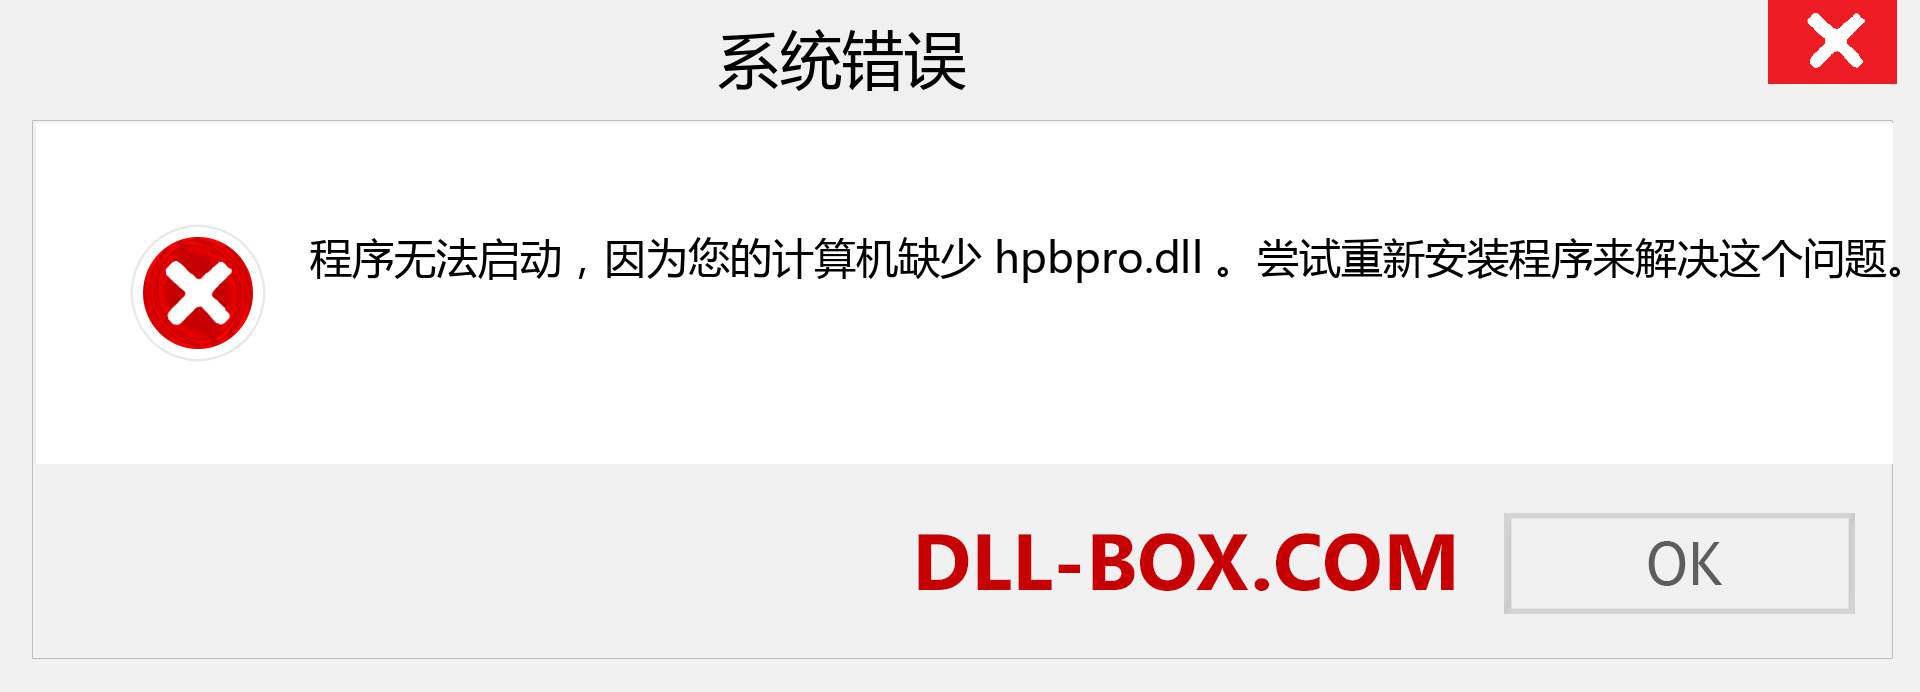 hpbpro.dll 文件丢失？。 适用于 Windows 7、8、10 的下载 - 修复 Windows、照片、图像上的 hpbpro dll 丢失错误